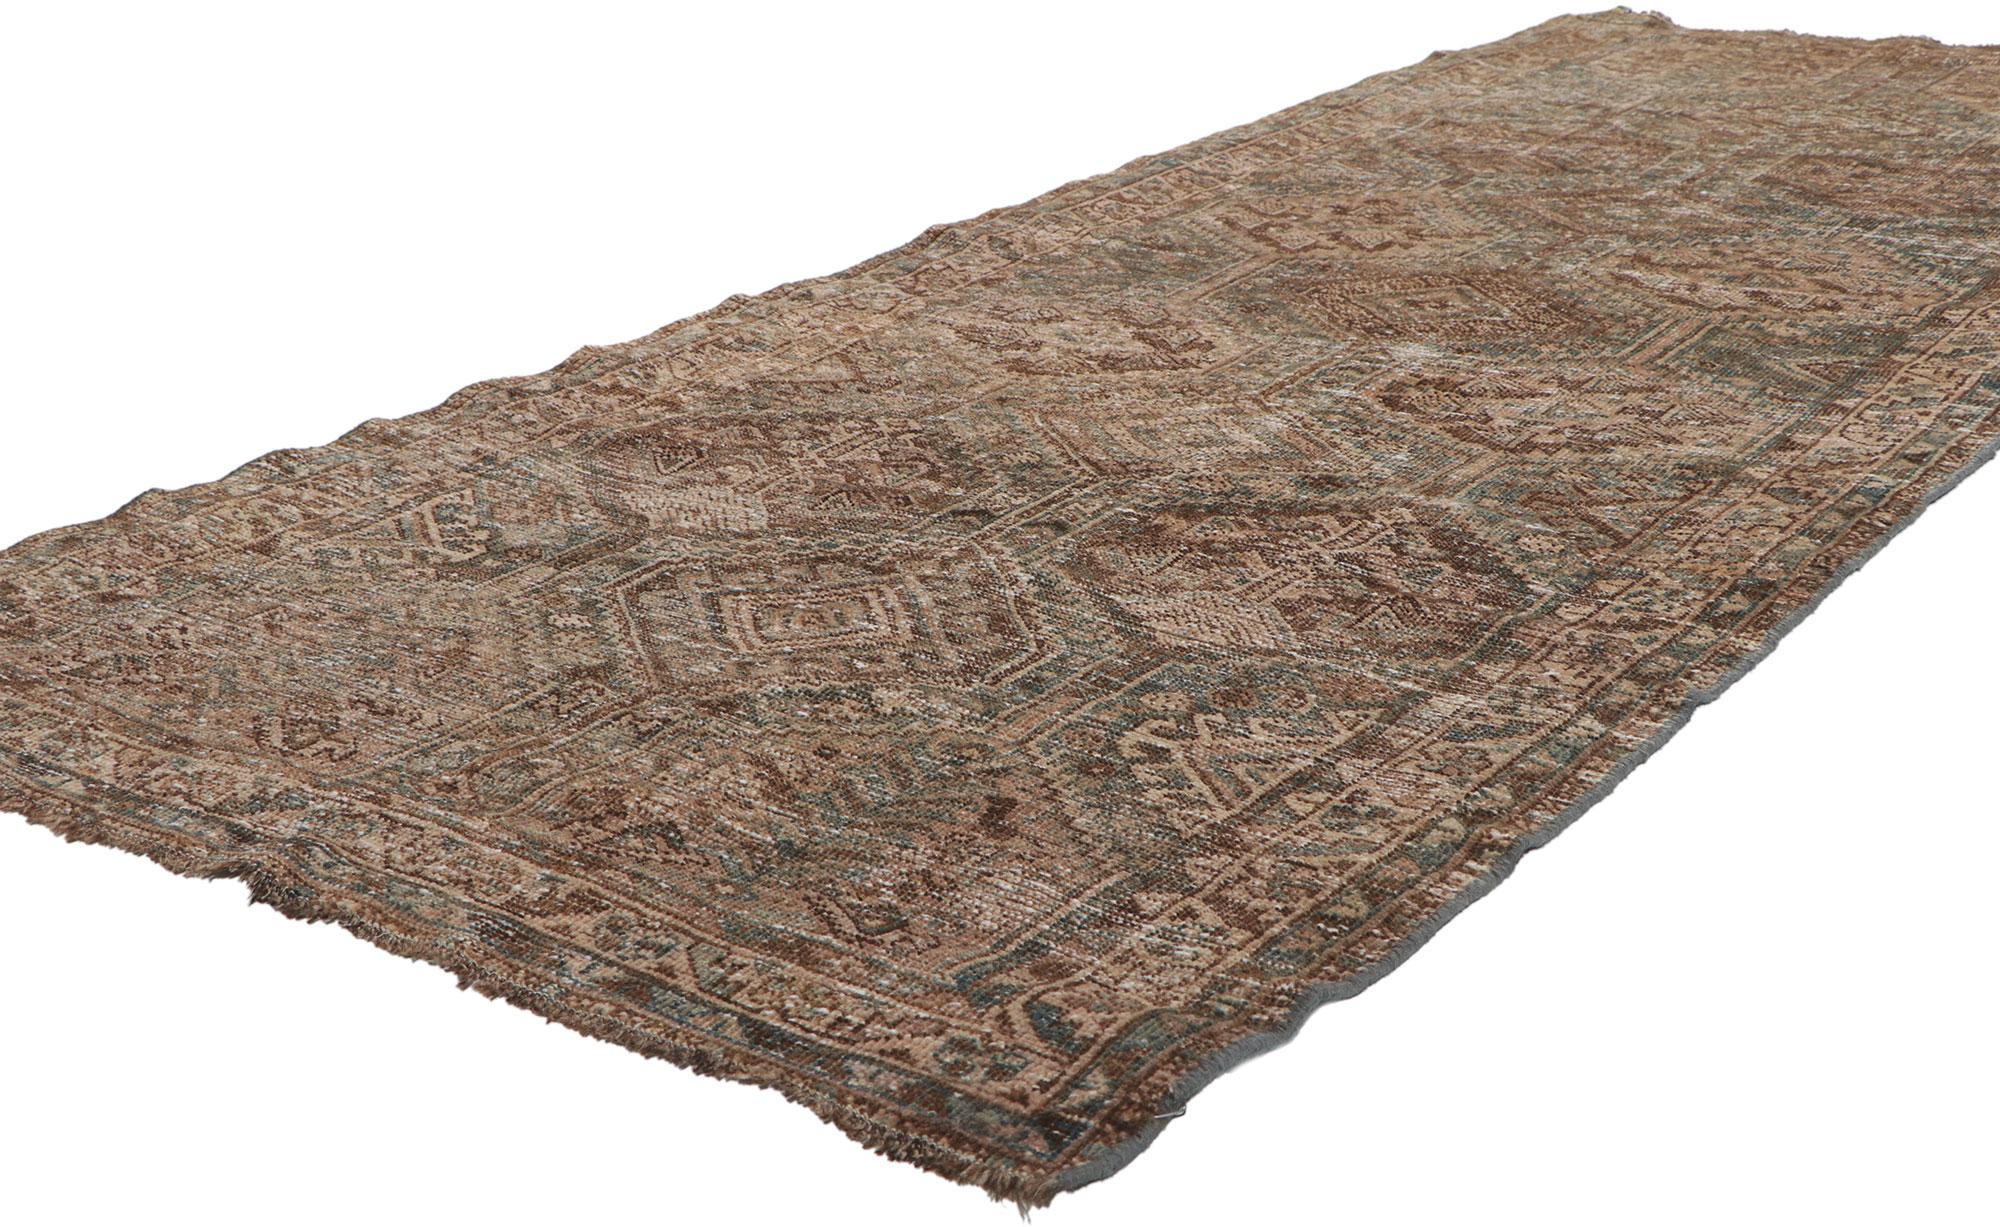 60960 Tapis persan antique vieilli Malayer, 03'04 x 08'07. Les chemins de tapis persans Malayer lavés à l'ancienne sont des tapis longs et étroits fabriqués à la main dans la région de Malayer, dans l'ouest de l'Iran, et traités selon un processus